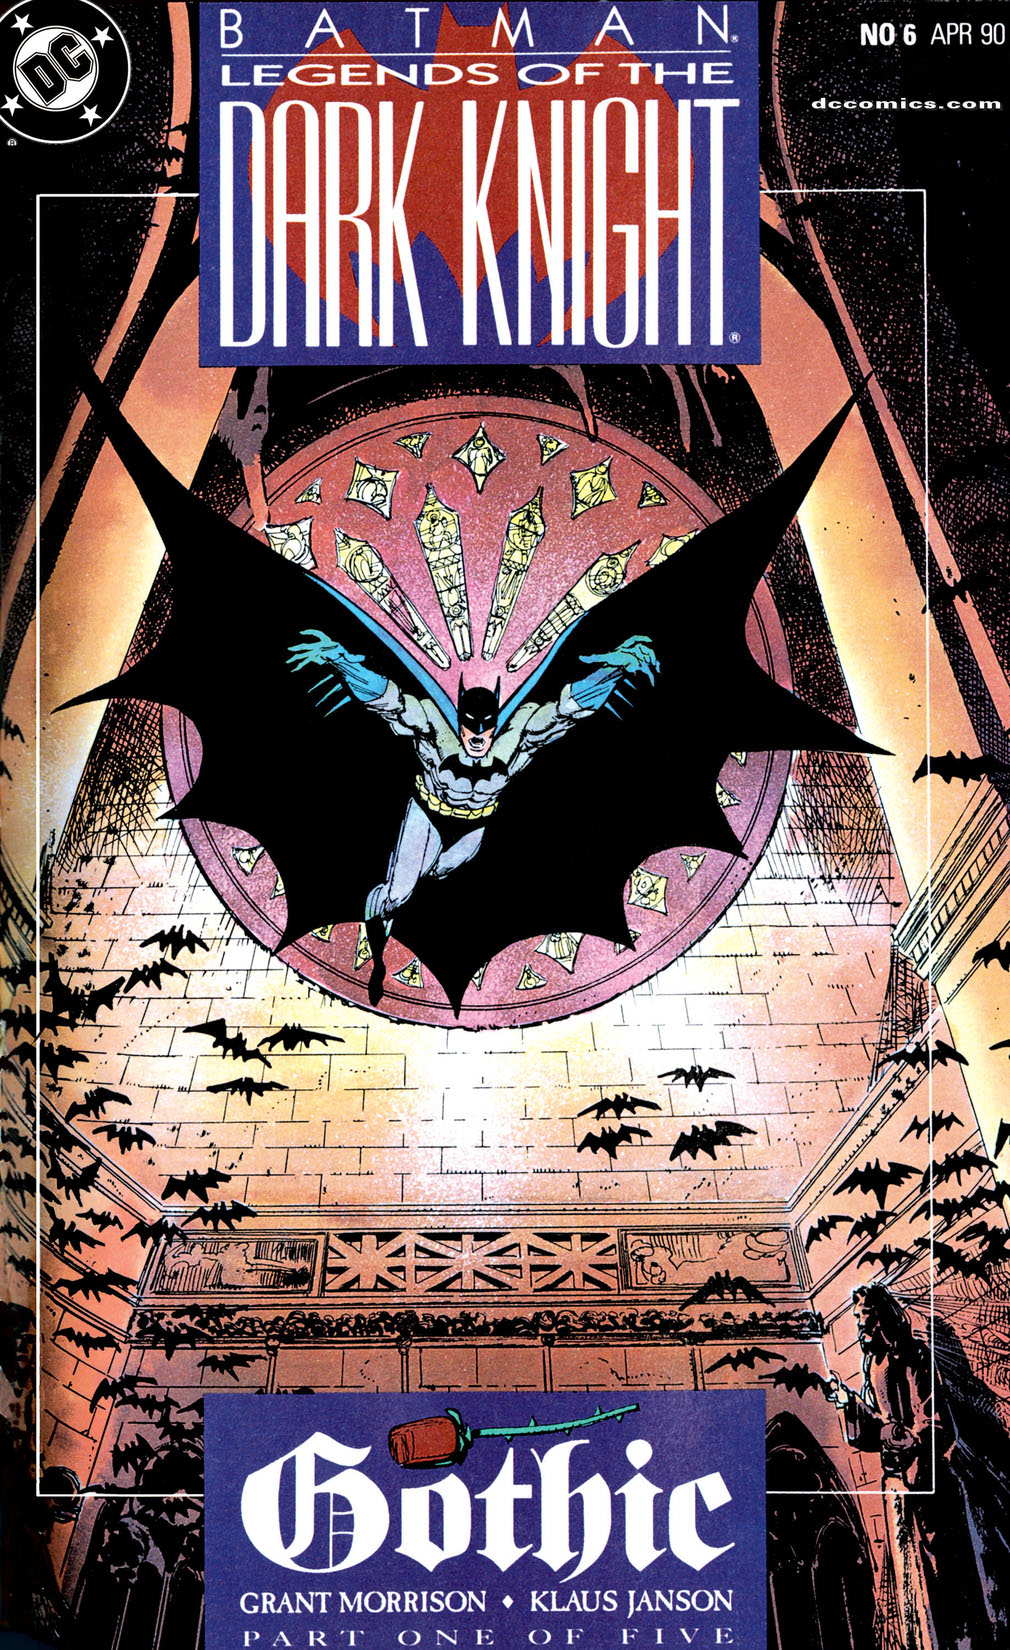 Batman: Legends of the Dark Knight # 7 USA,1990 Gothic part 2 Klaus Janson 